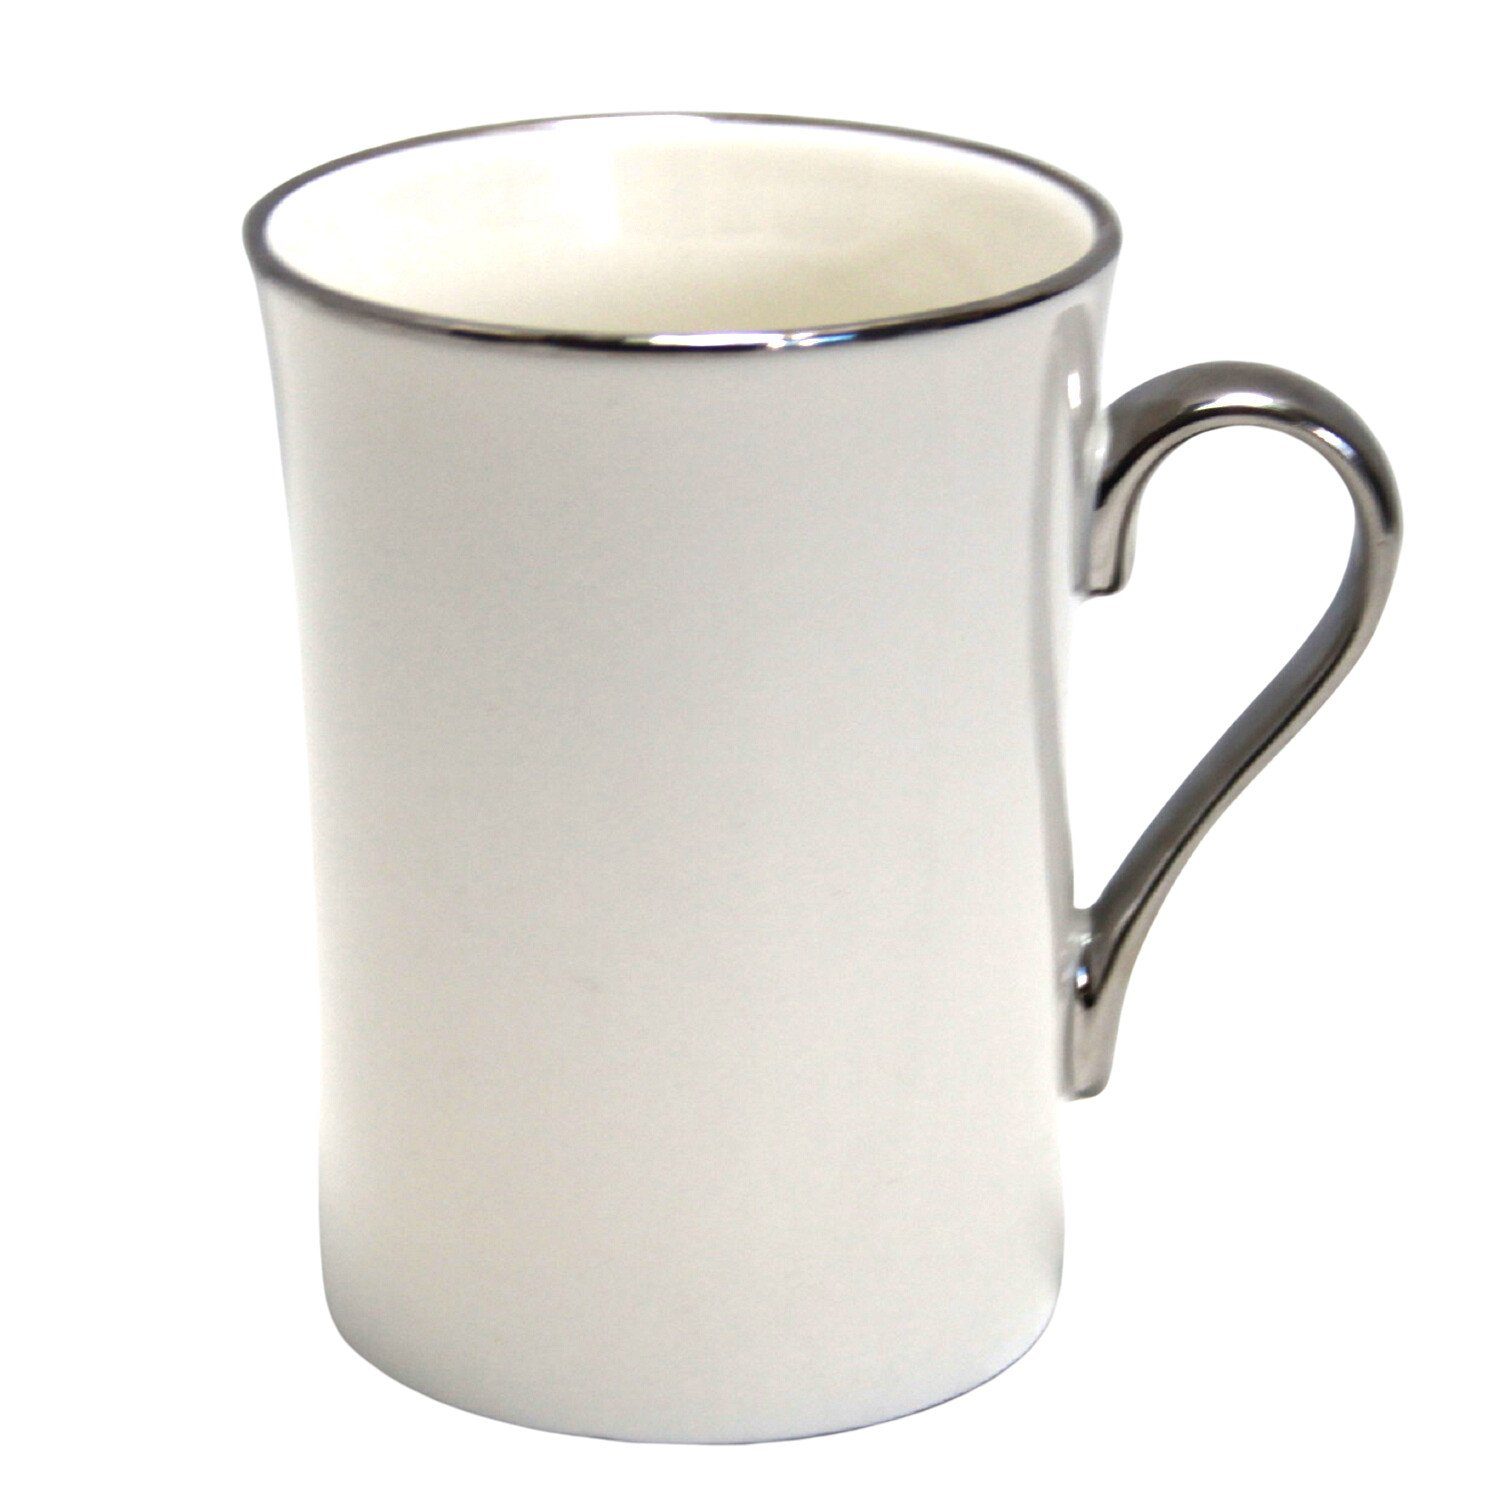 Porzellan-Kaffeebecher Becher W23SV53-06396, 250ml Isabell Queen